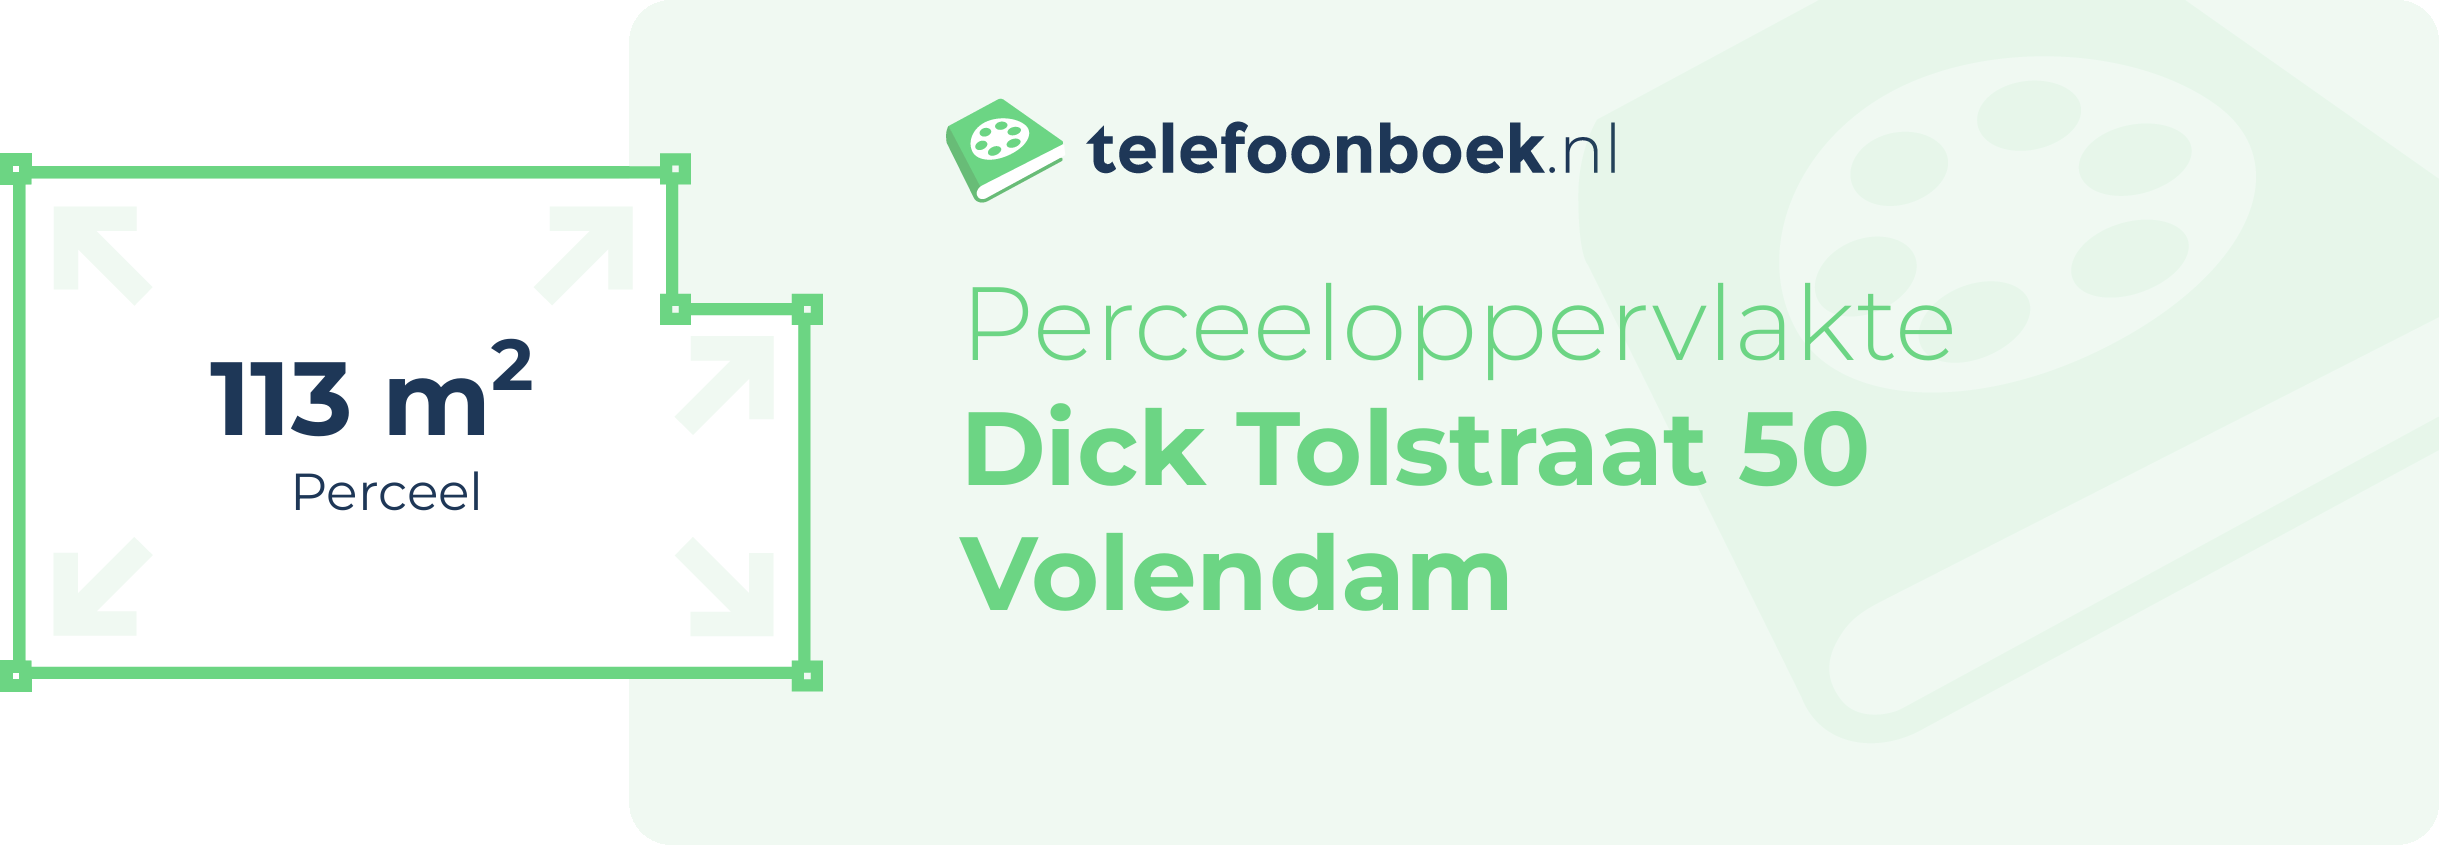 Perceeloppervlakte Dick Tolstraat 50 Volendam